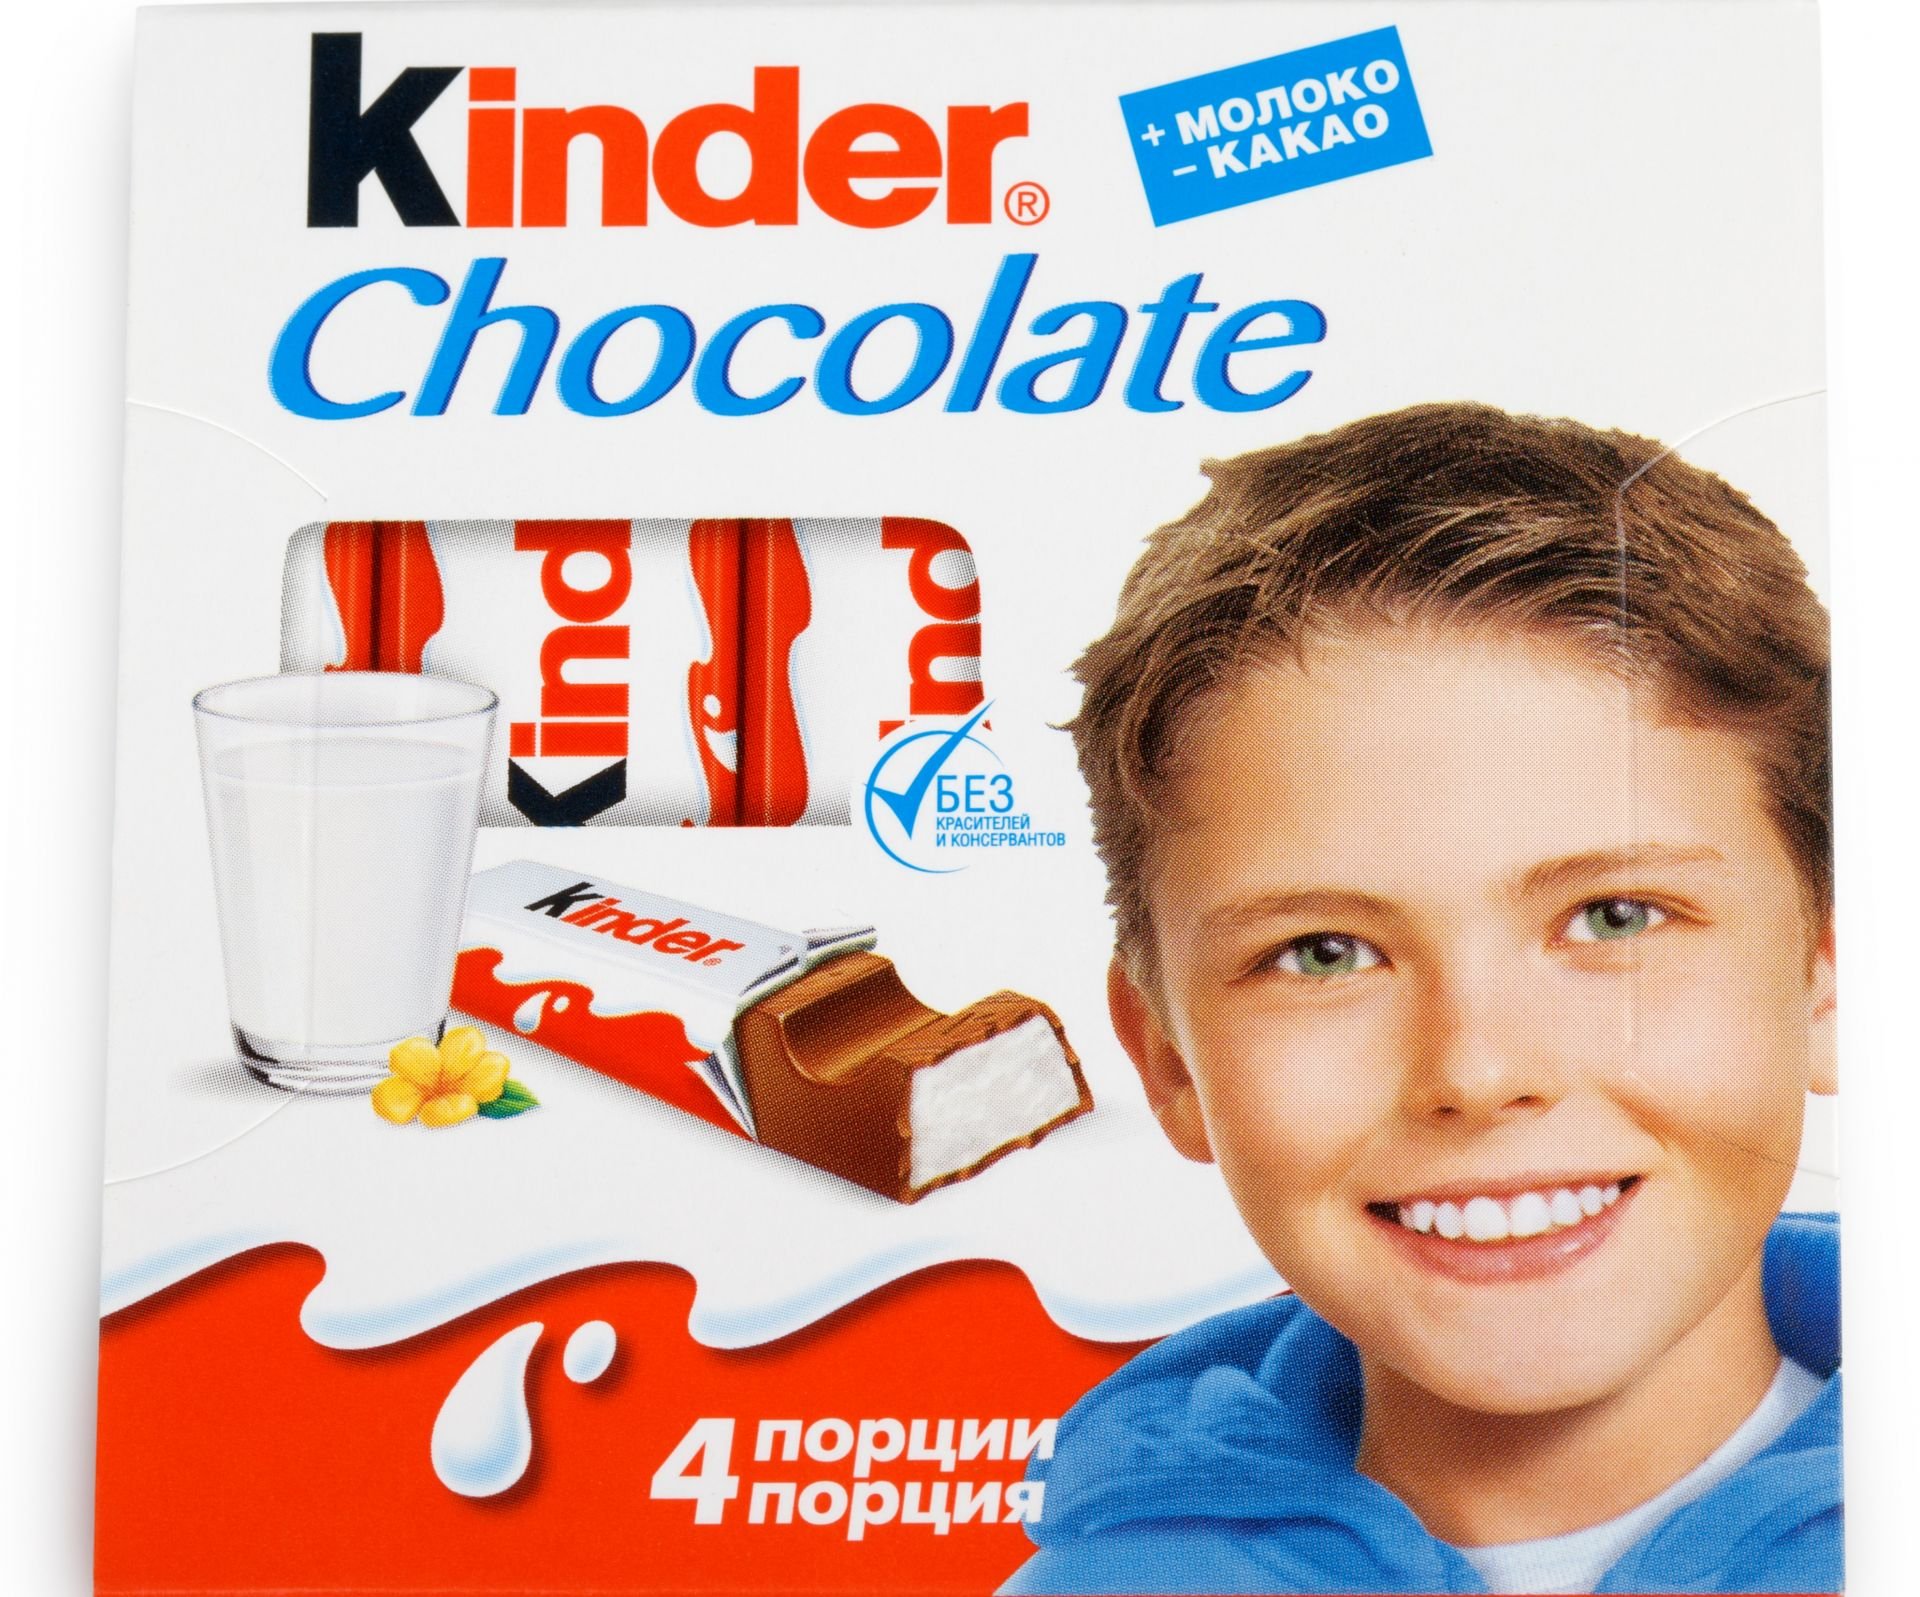 Мальчик с киндера. Гюнтер Эурингер kinder. Мальчик с Киндер шоколада. Шоколадка Киндер. Киндер шоколад мальчик на обложке.